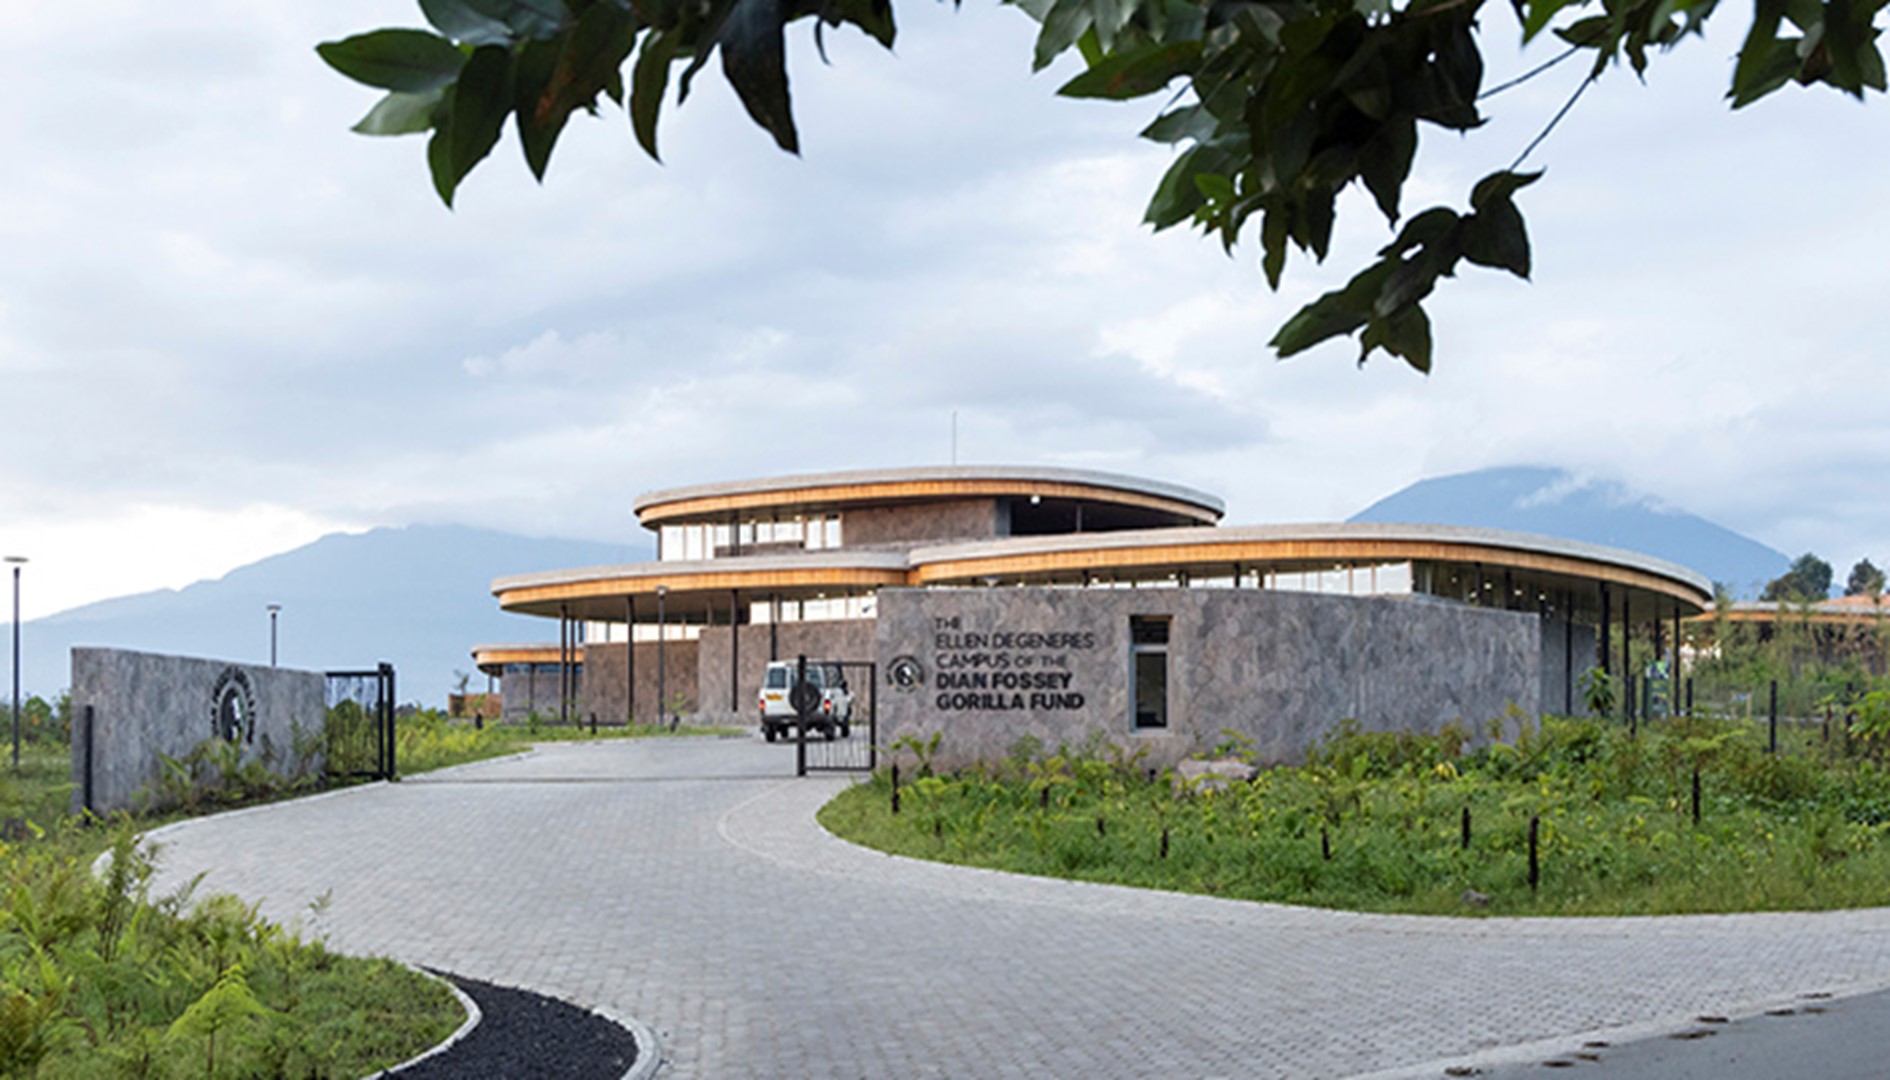 A fenntarthatóság formálja a Dian Fossey Gorilla Alapítvány ruandai Ellen DeGeneres kampuszát